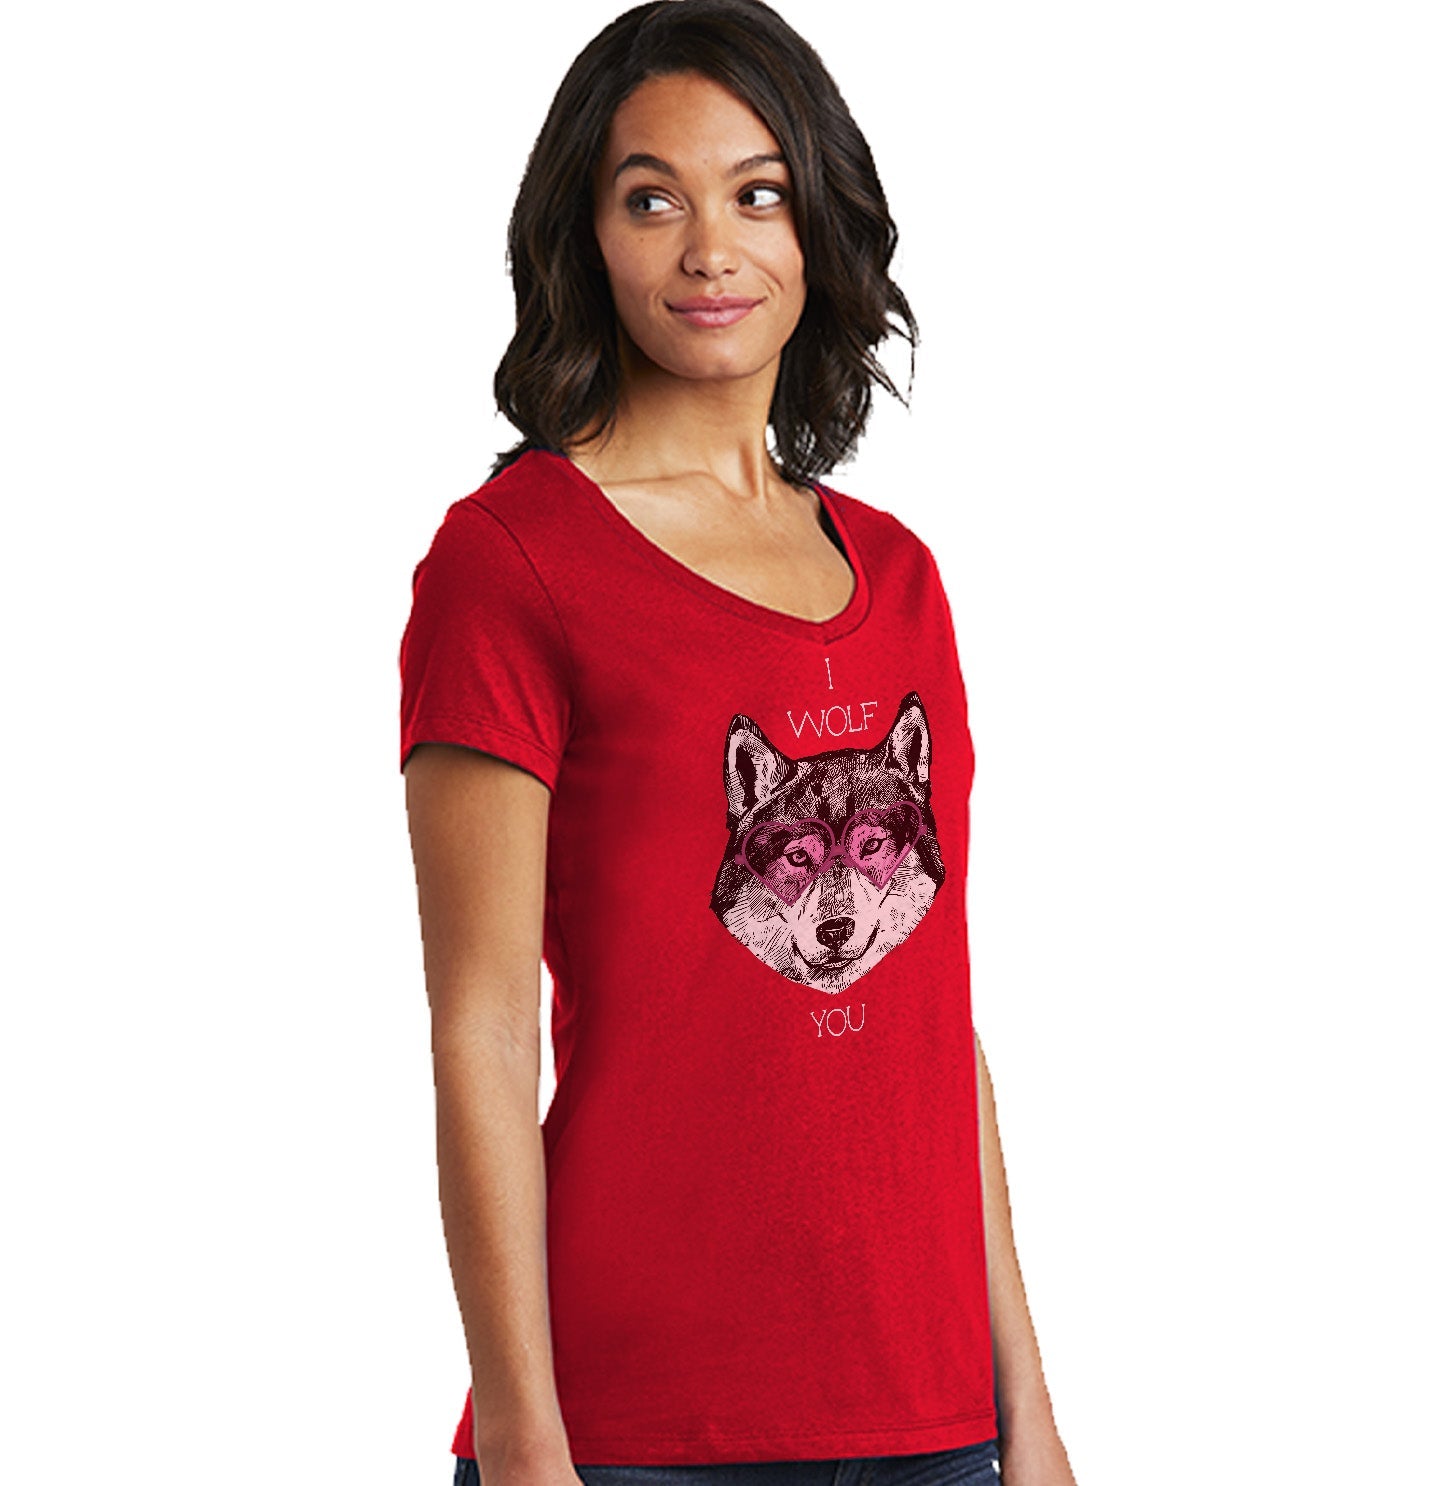 Animal Pride - I Wolf You - Women's V-Neck T-Shirt